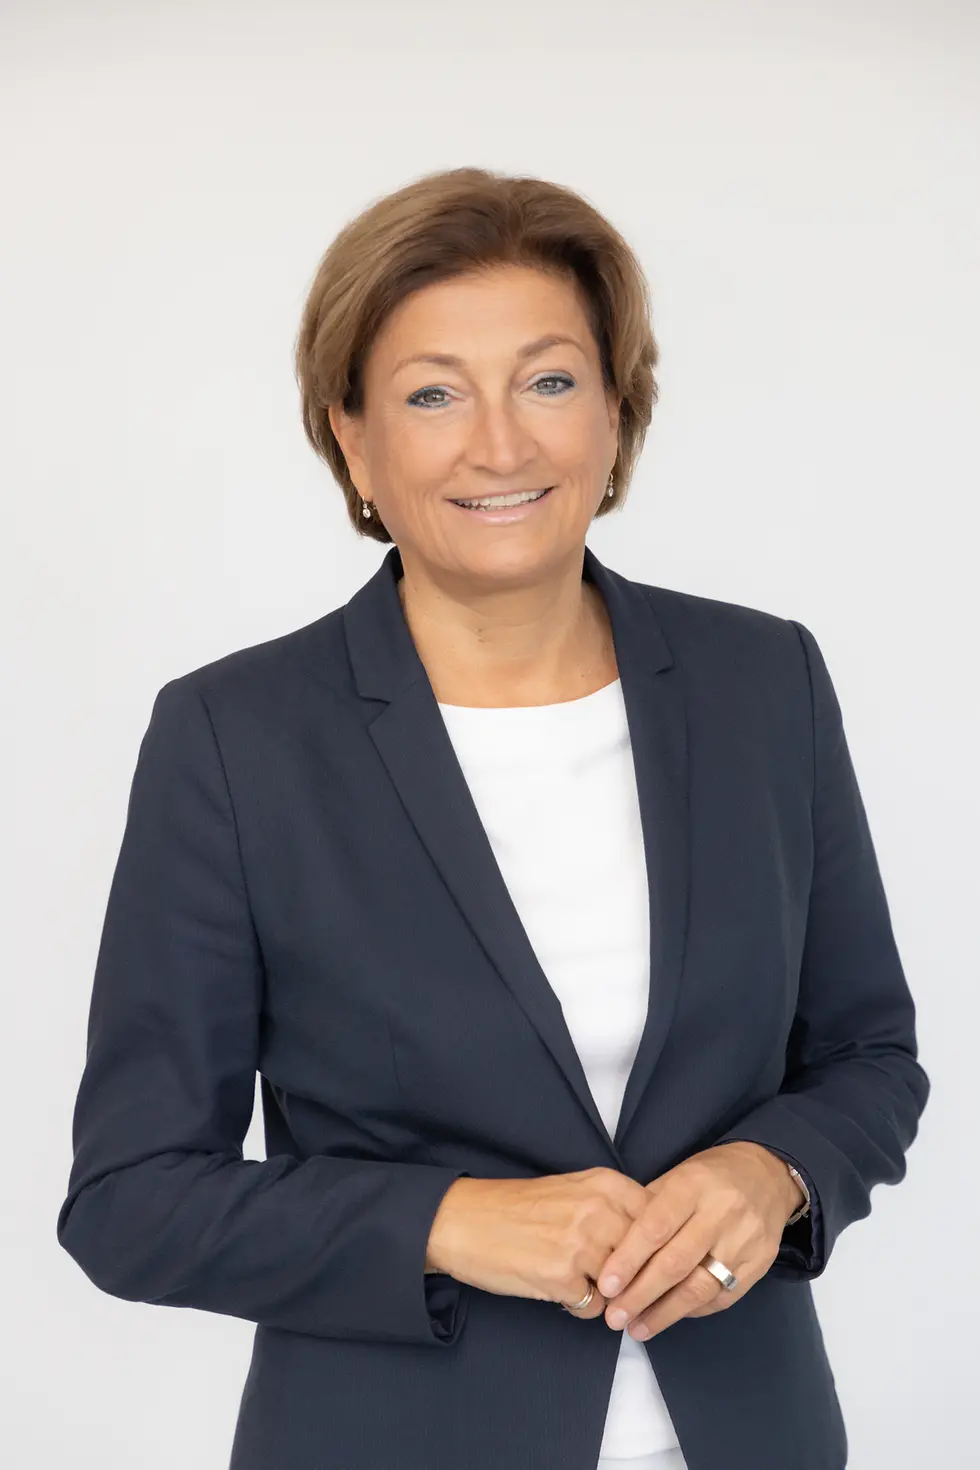 Birgit Rechberger-Krammer wird Europa-Chefin der zukünftigen Henkel Consumer Brands, dem Zusammenschluss von Laundry & Home Care und Beauty Care zu einem Geschäftsbereich.